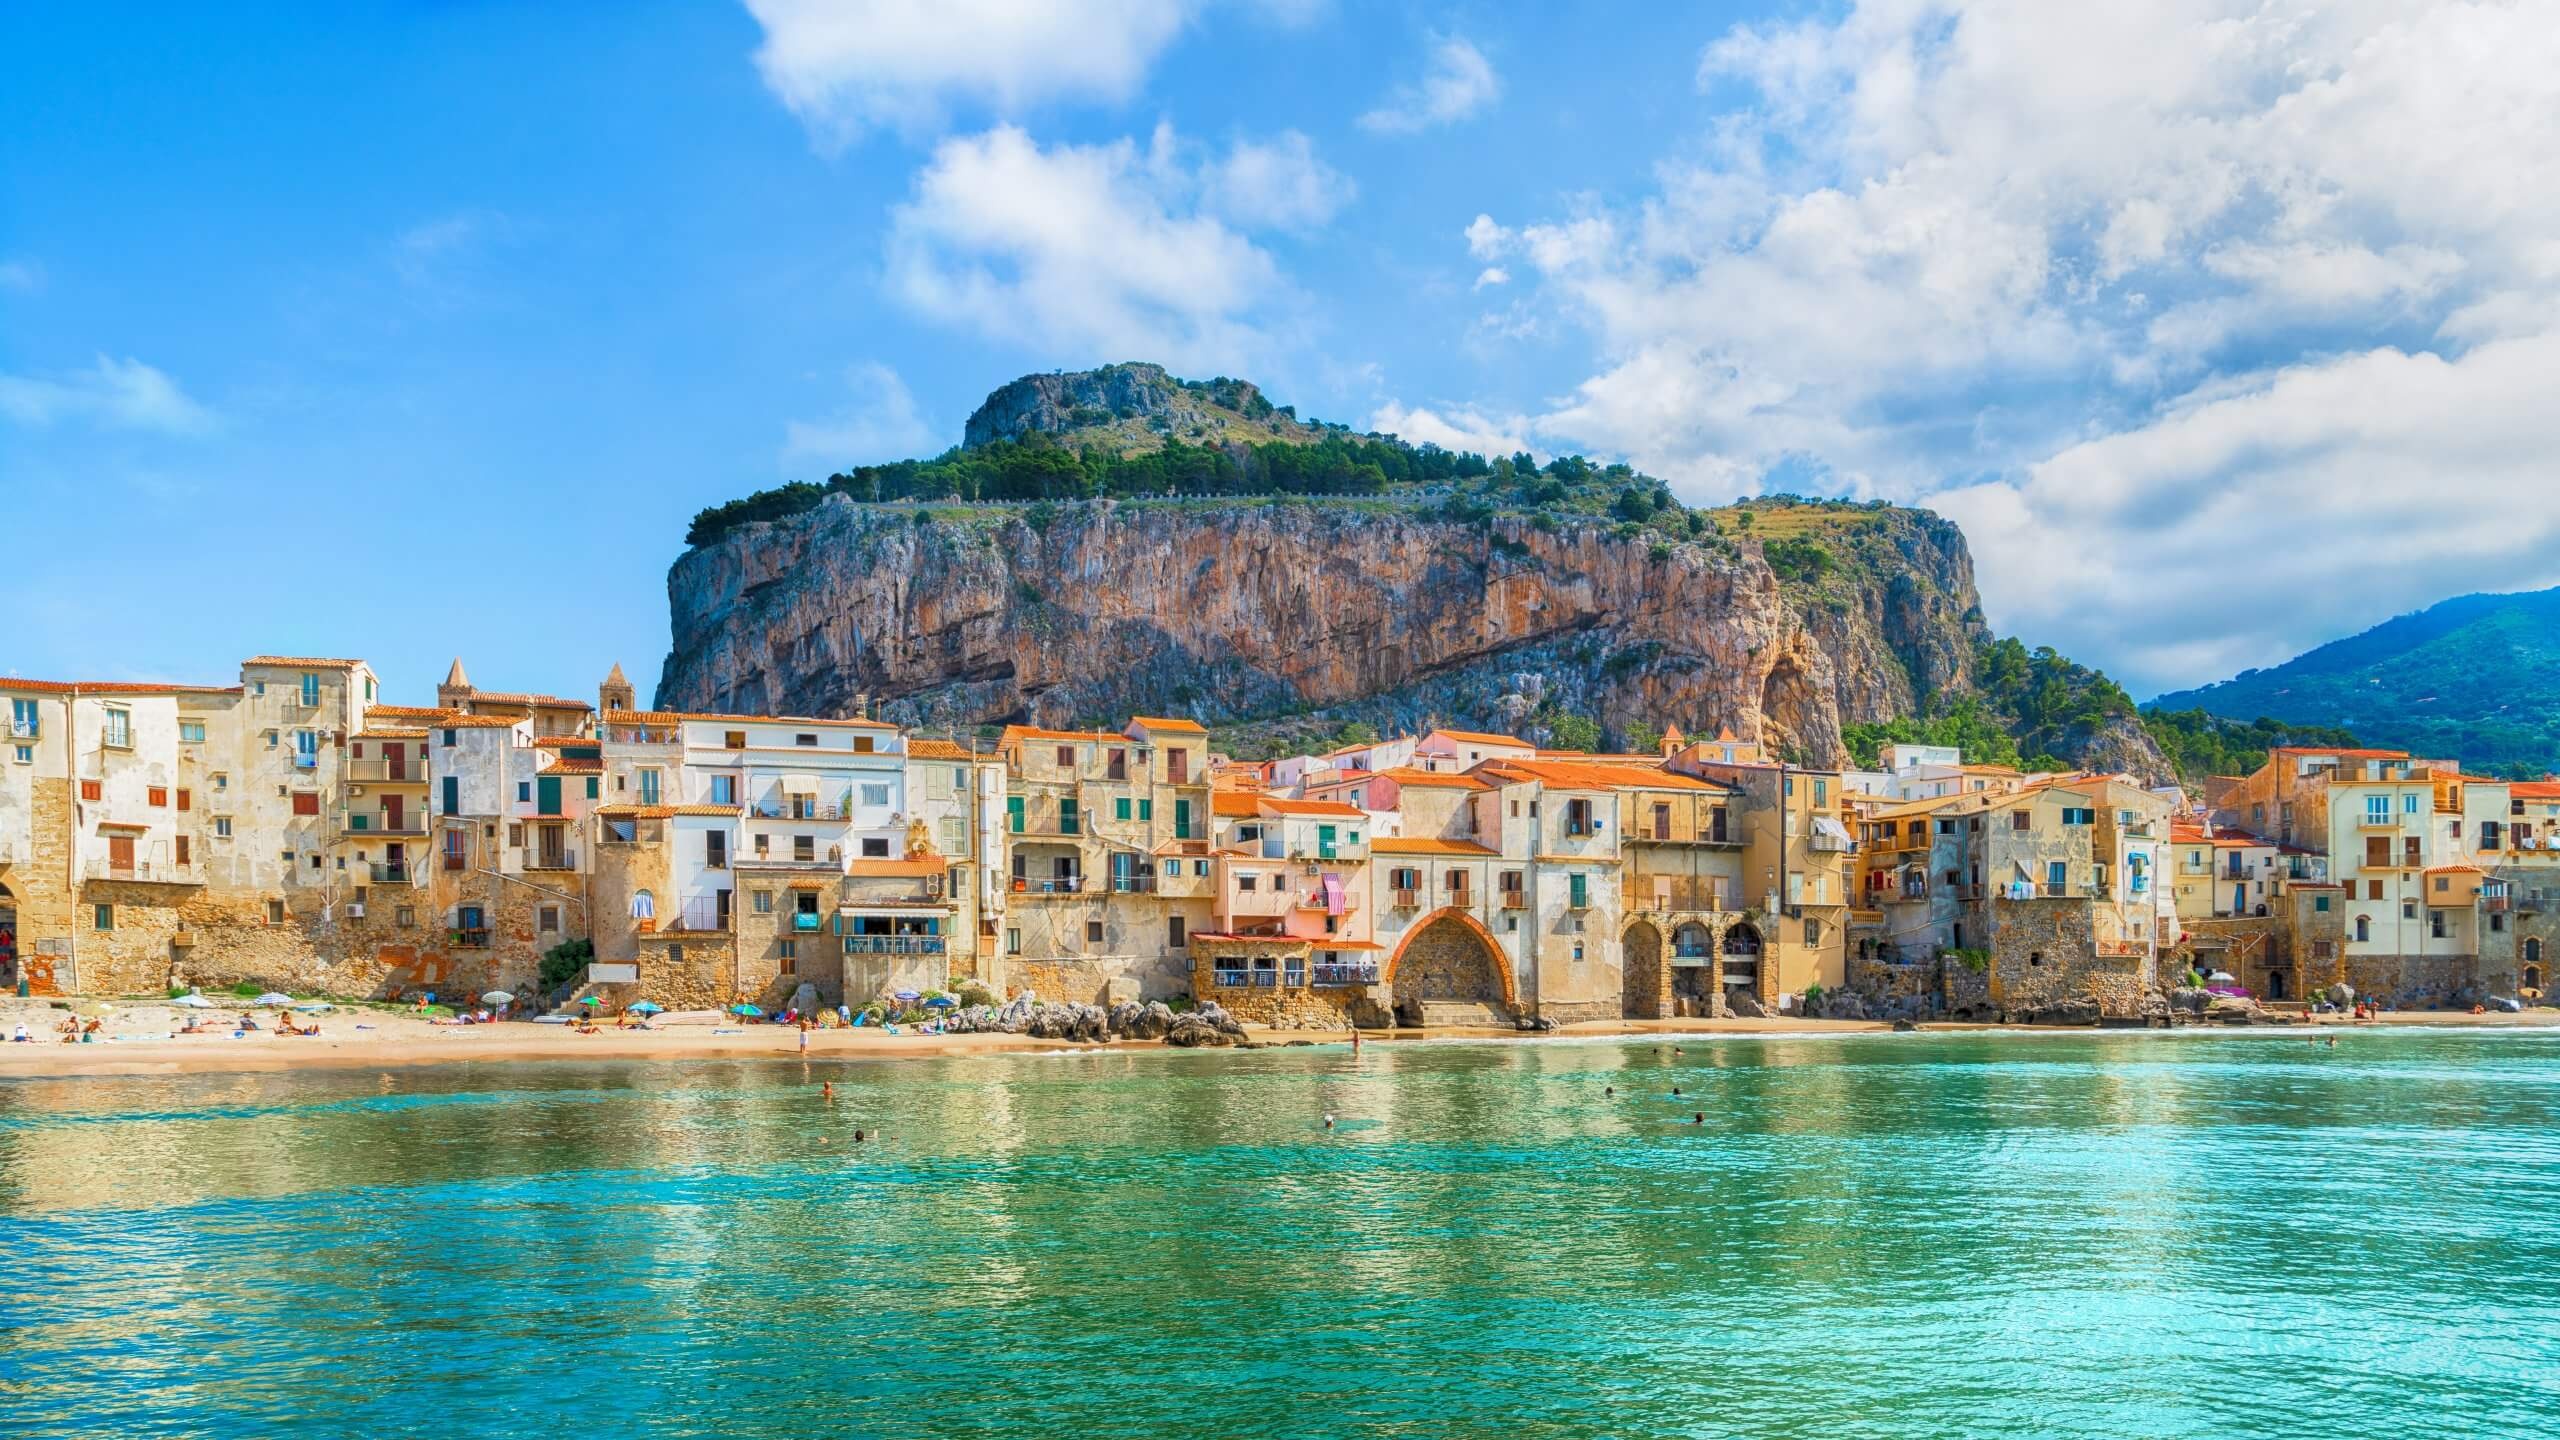 Cefalu, Sicilian Carousel, Sun Island Tours, 2560x1440 HD Desktop